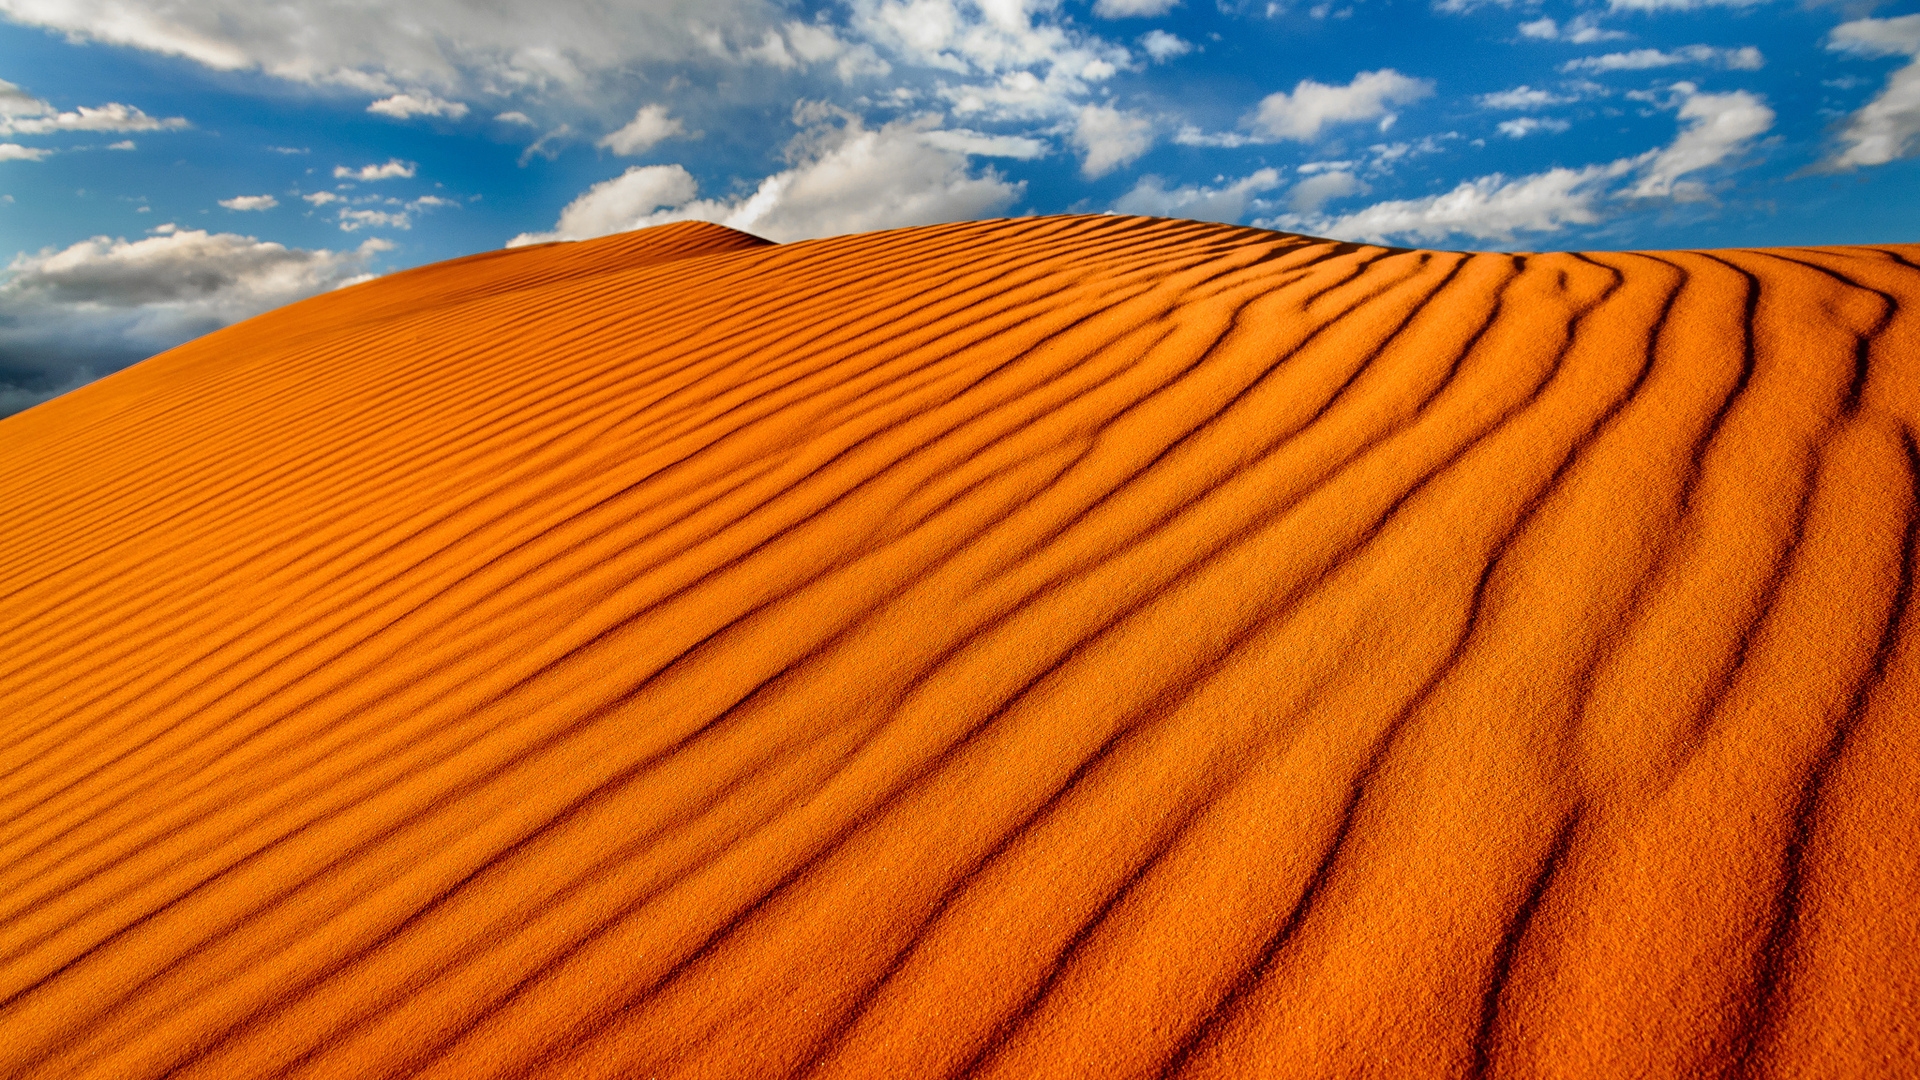 Sand Dunes for 1920 x 1080 HDTV 1080p resolution